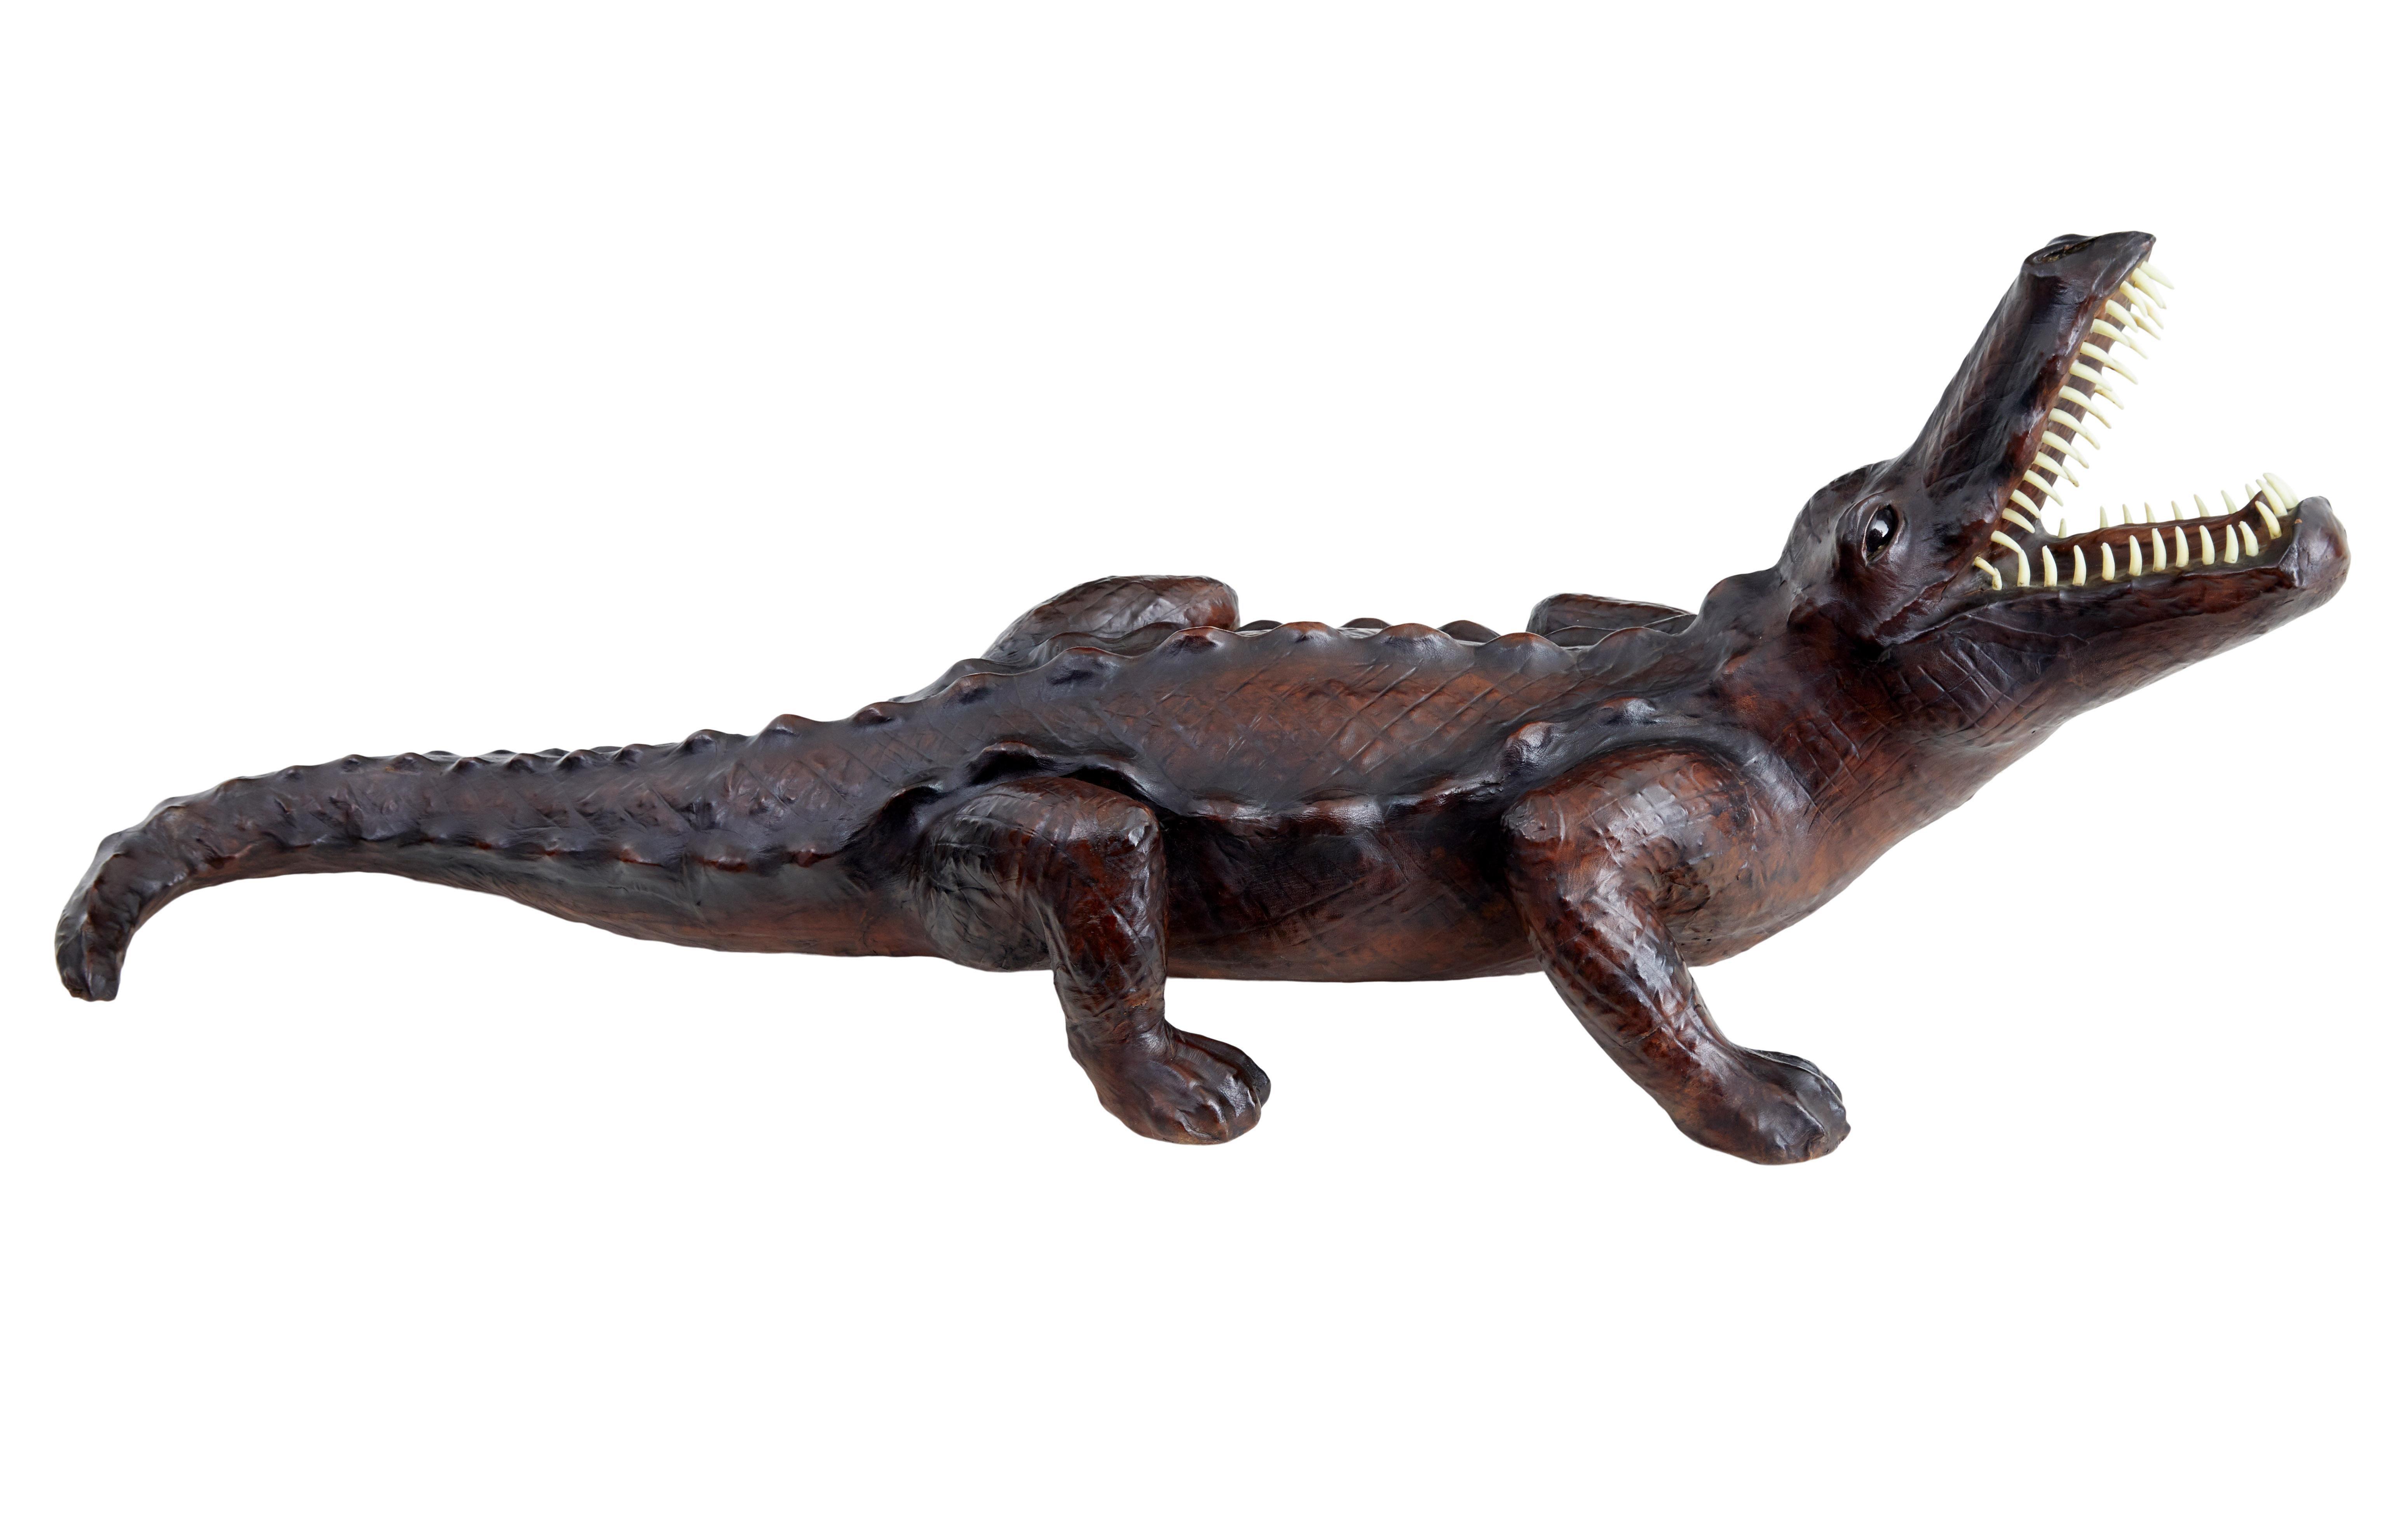 Modèle en cuir décoratif du 20e siècle représentant un crocodile, circa 1990.

Pièce de collection à l'échelle 1/5 environ, représentant un crocodile avec la tête levée dans une position agressive.  Revêtu d'un similicuir qui a pris une bonne